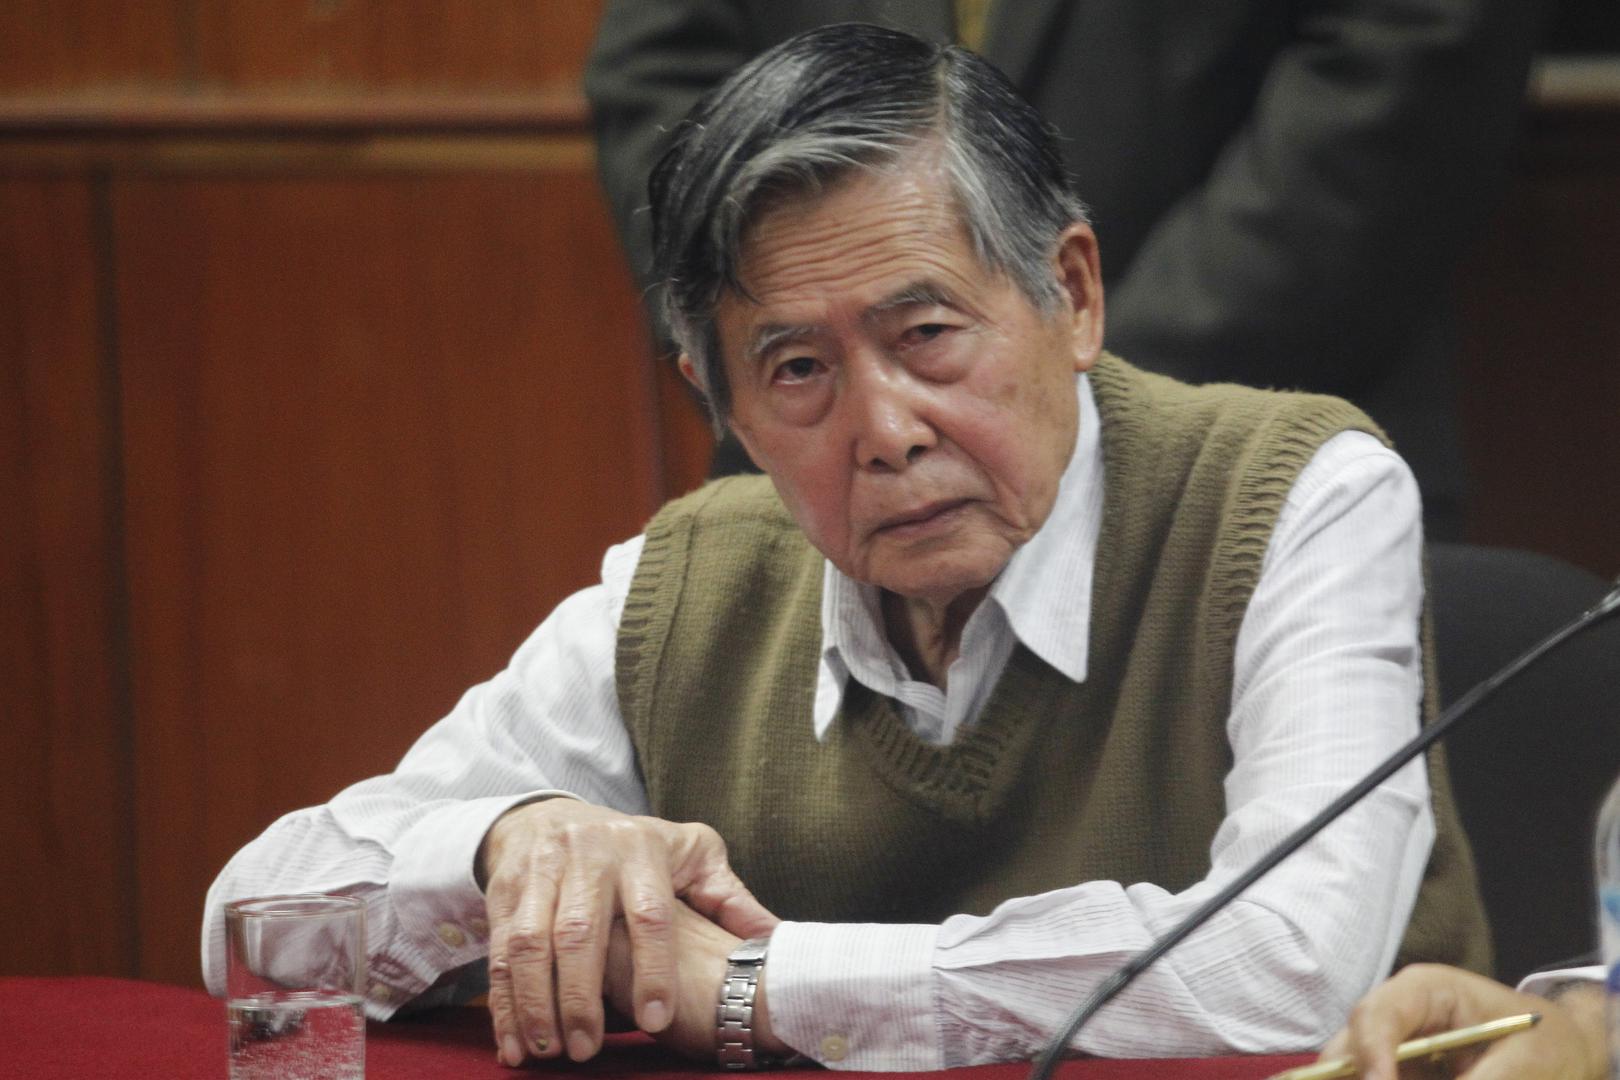 El ex presidente Alberto Fujimori escucha la lectura de una decisión en su contra, en Lima, el 29 de octubre de 2013.